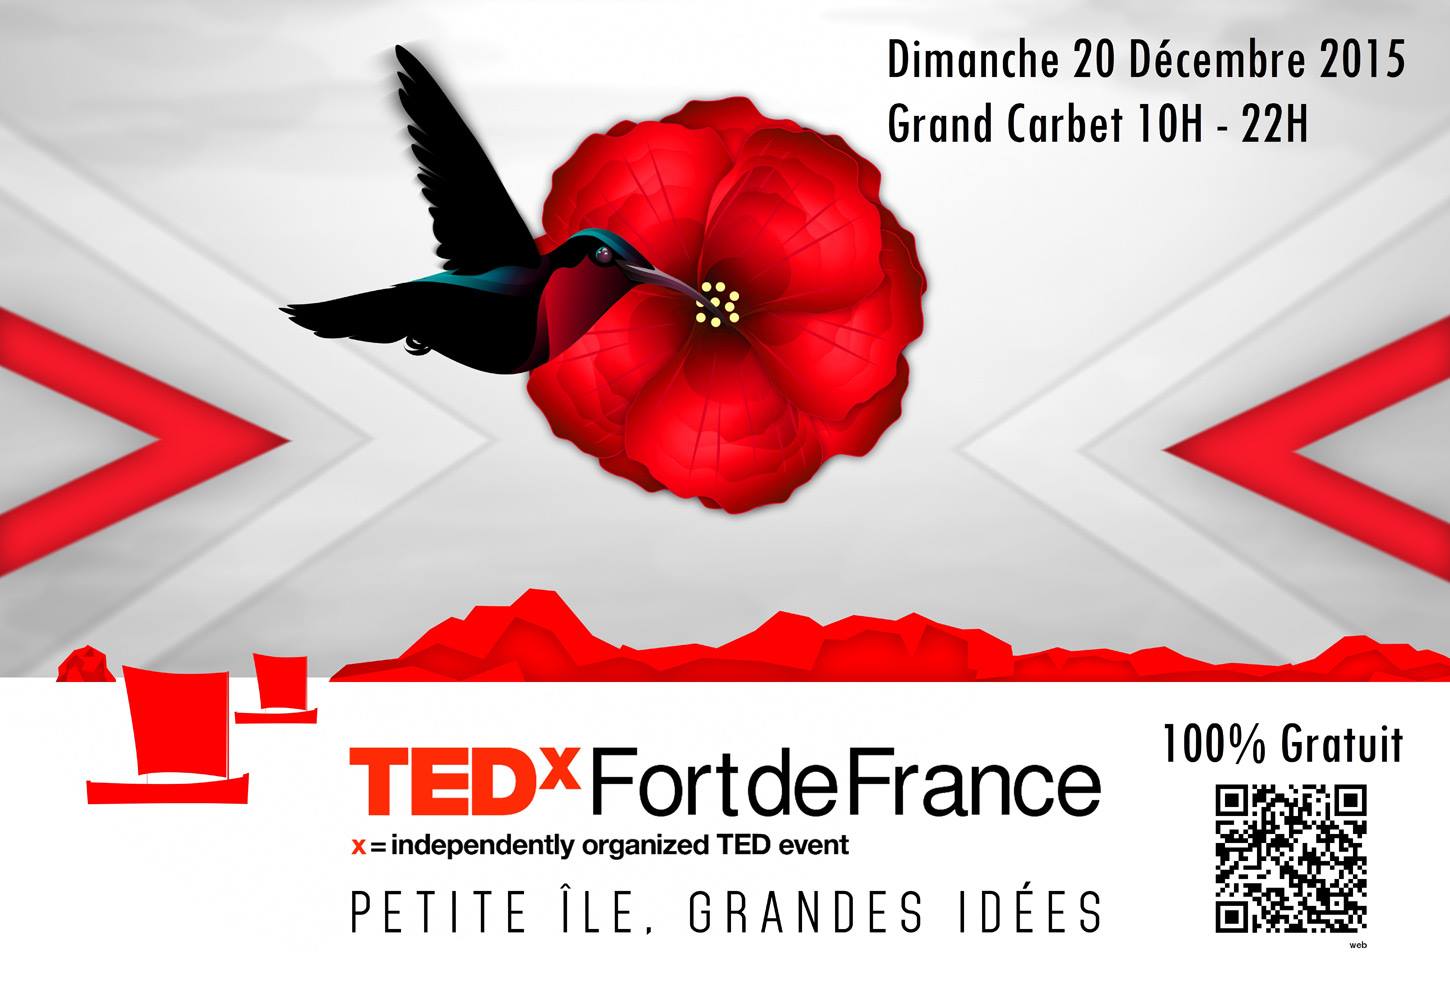 TEDx Fort-de-France : La Martinique échange sur les &laquo;&nbsp;grandes idées&nbsp;&raquo; pour éclairer le monde